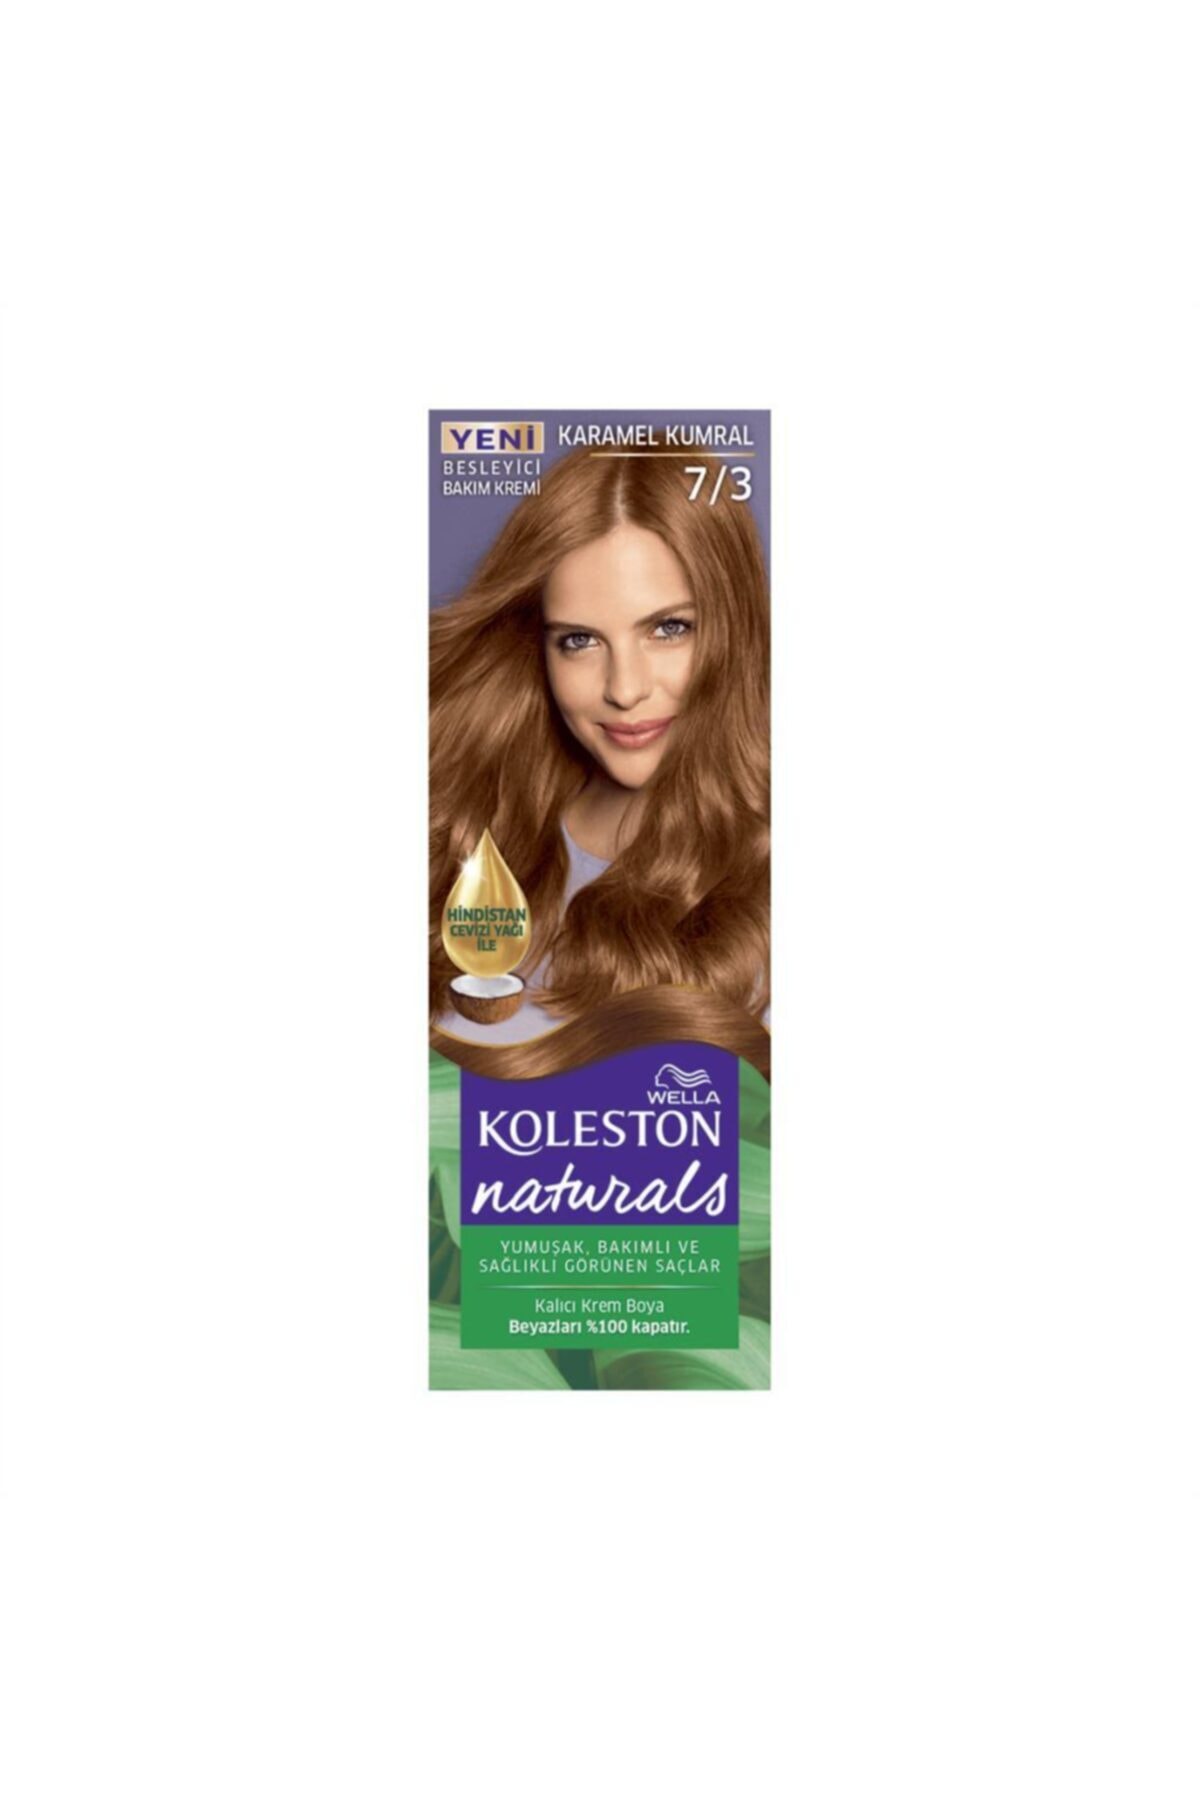 atlamak Senfoni bulutlu  Koleston Karamel Kumral Naturals Maxi Saç Boyası Fiyatı, Yorumları -  TRENDYOL